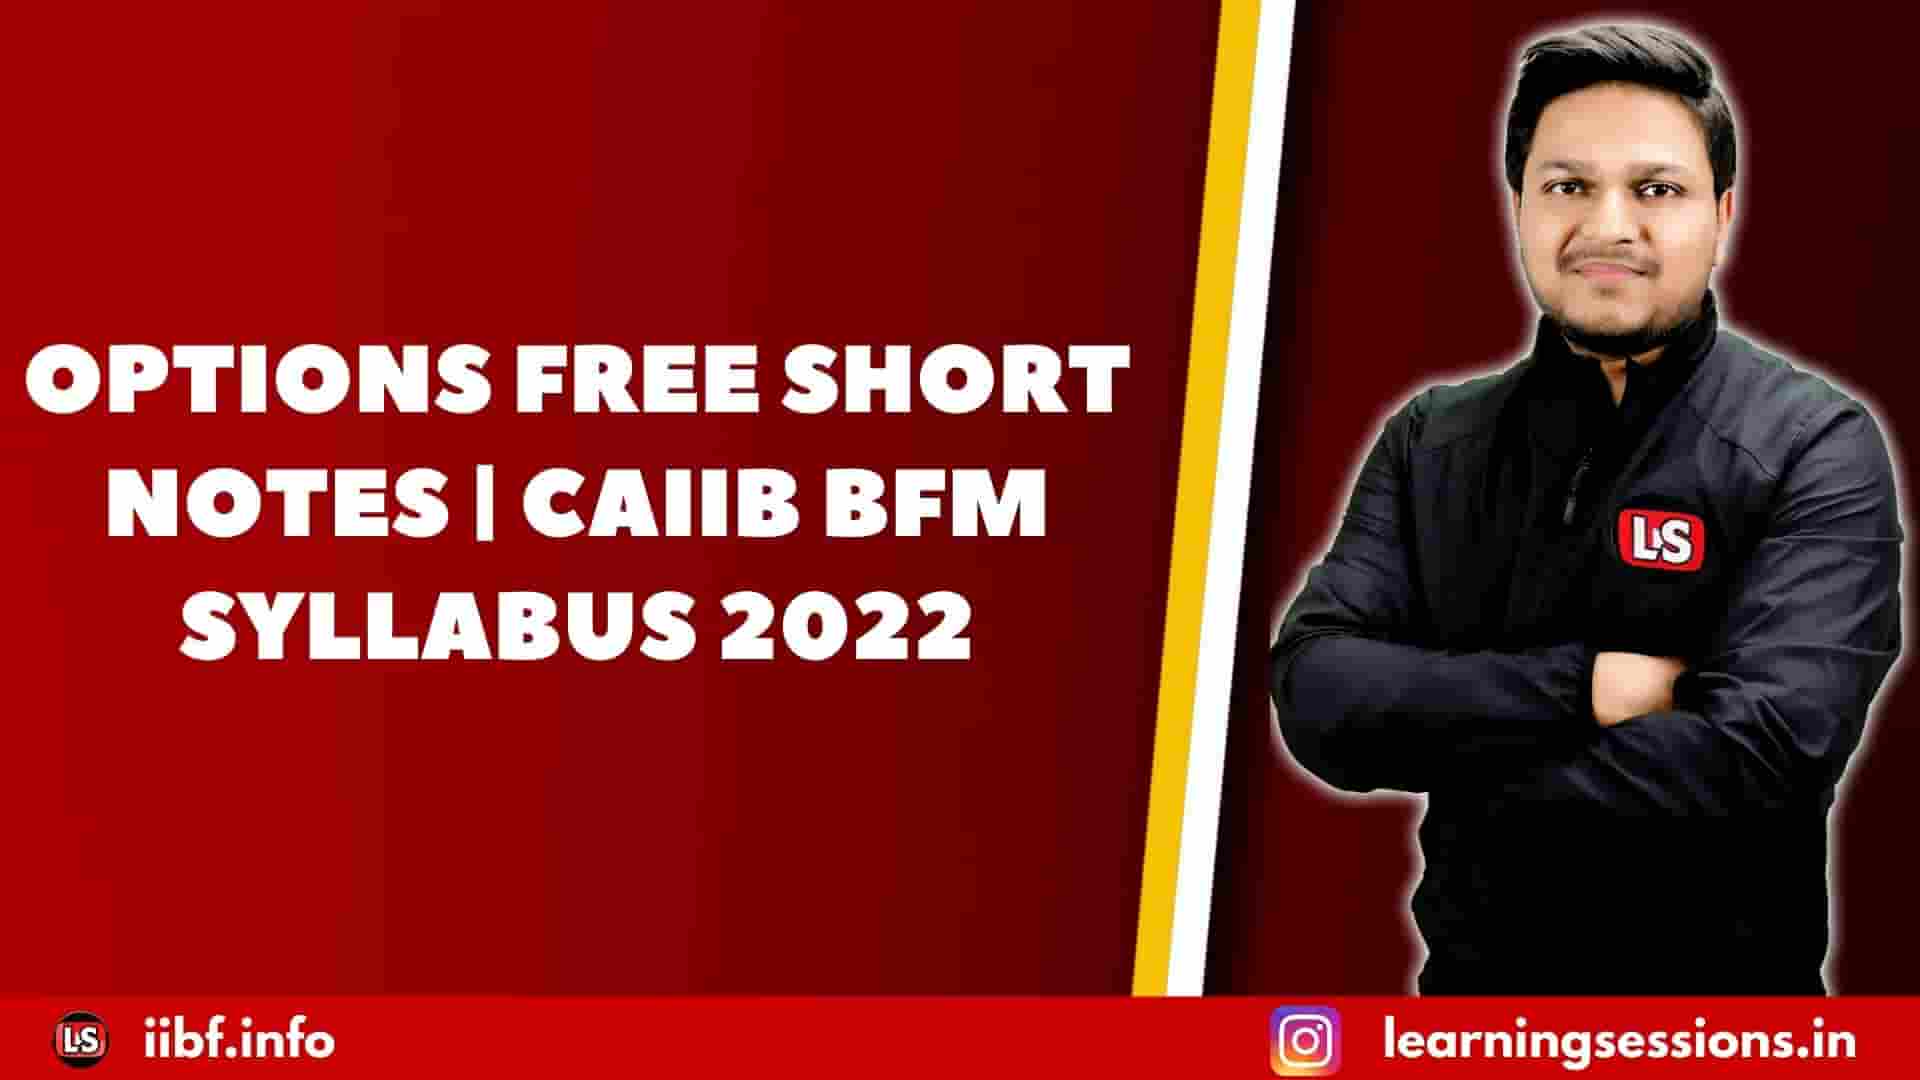 OPTIONS FREE SHORT NOTES | CAIIB BFM SYLLABUS 2022